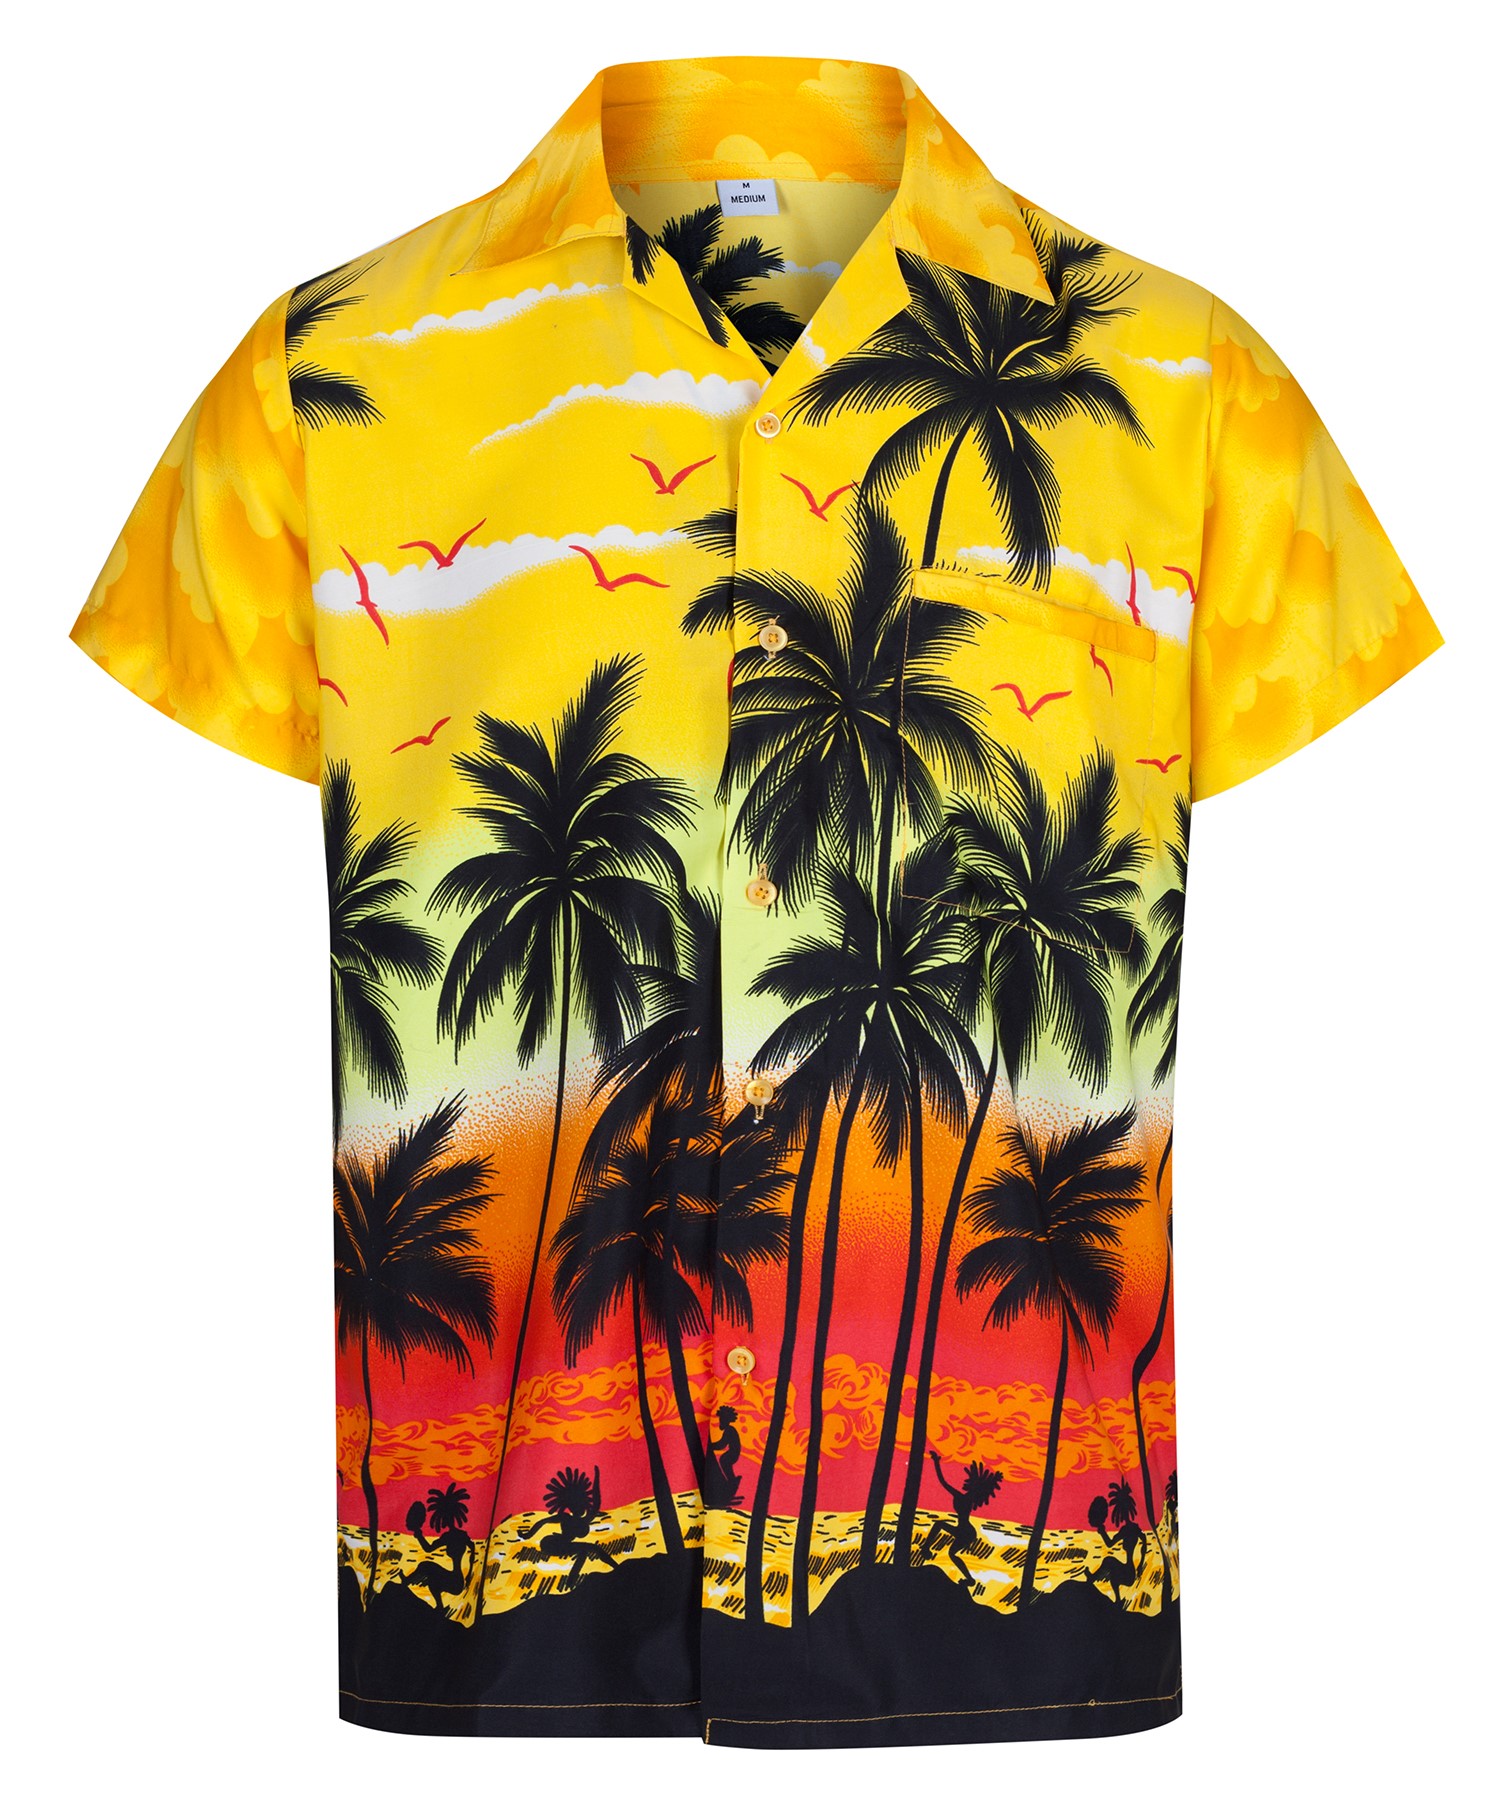 Рубашка пальма